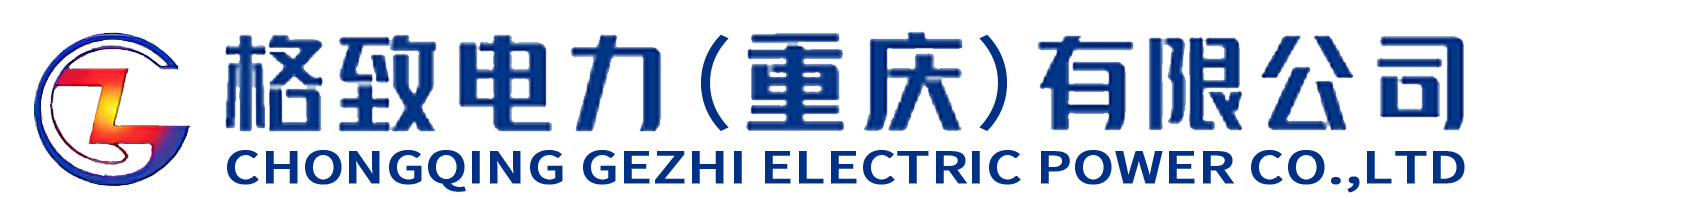 电力设计-电力工程-格致电力(重庆)有限公司